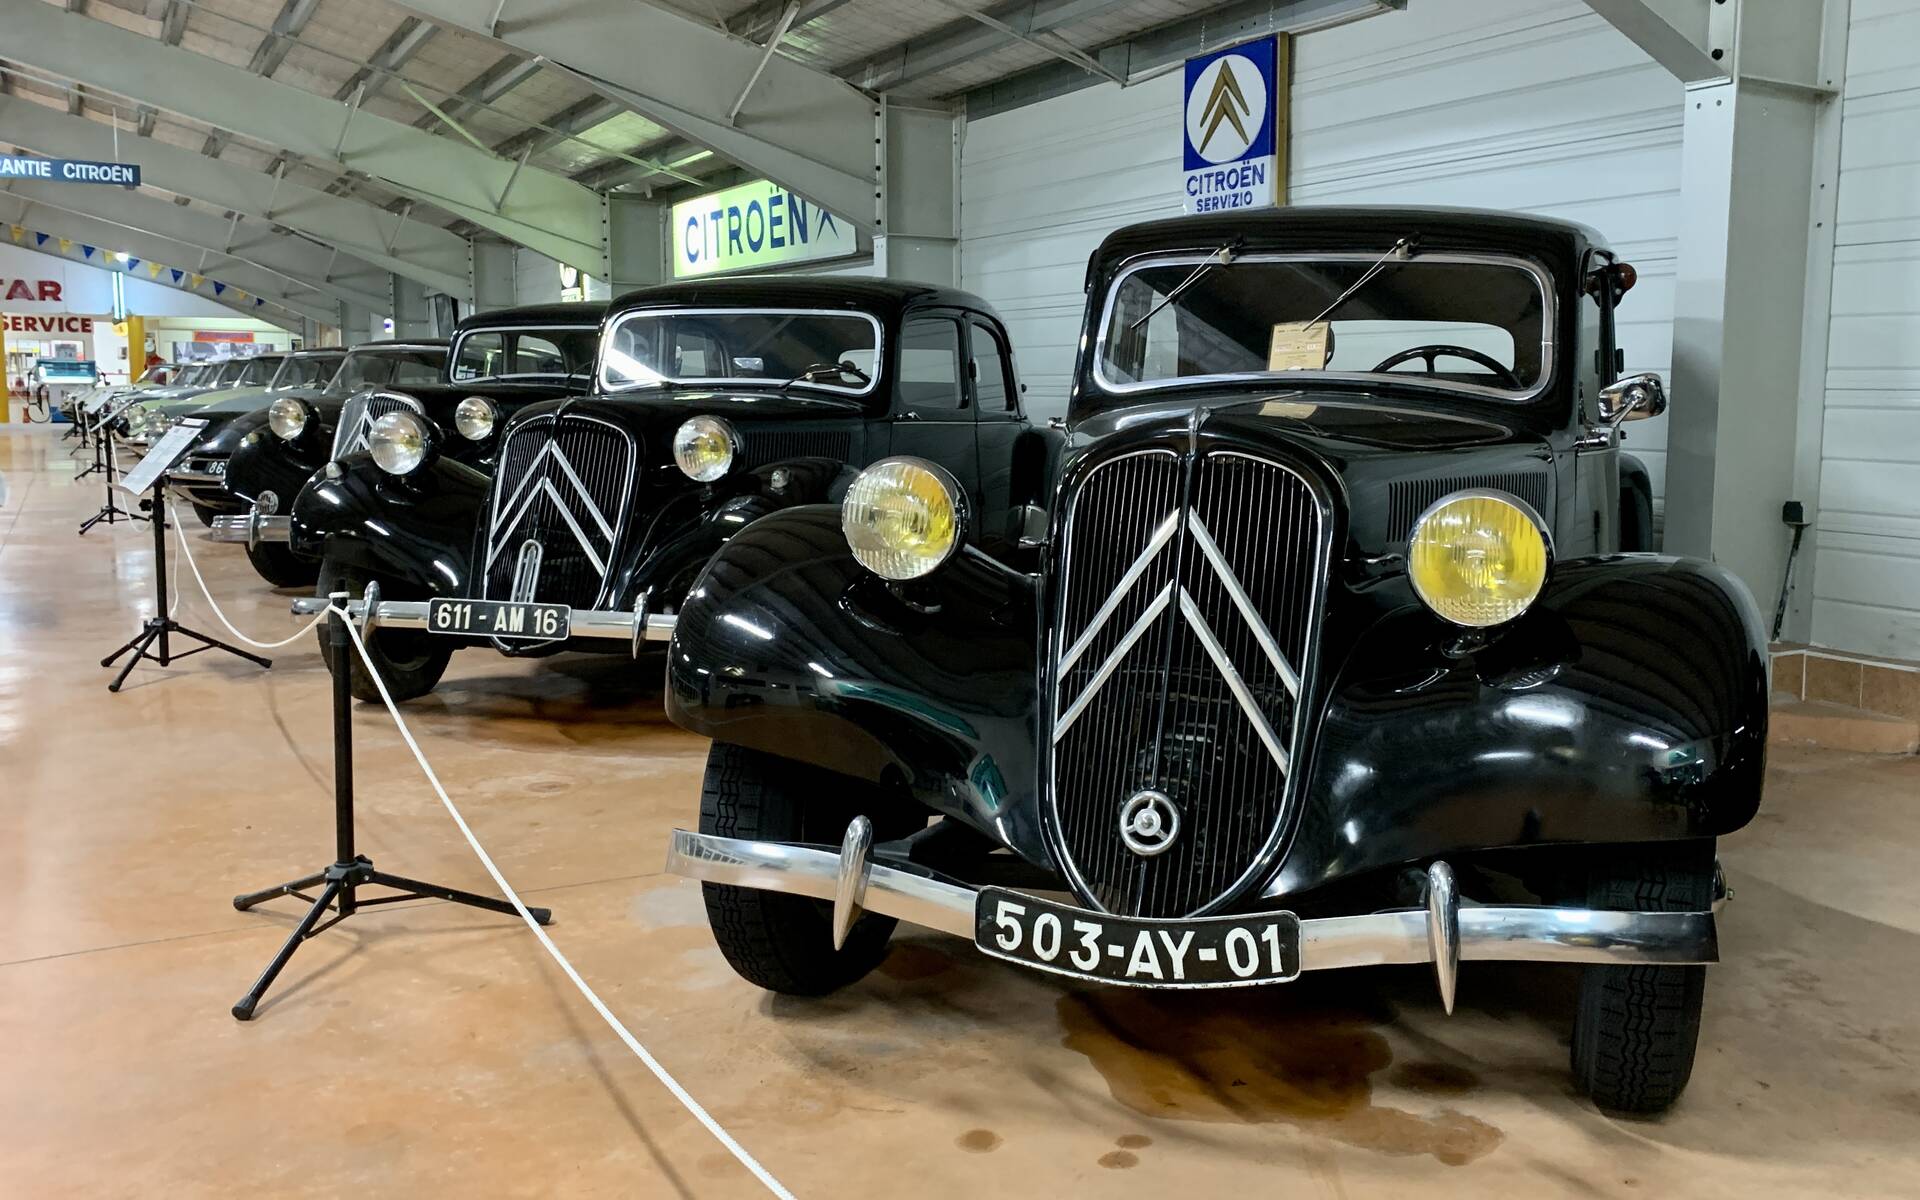 32 - Photos: plus de 100 Citroën d'exception réunies dans un musée en France 543089-photos-plus-de-100-citroen-d-exception-reunies-dans-un-musee-en-france